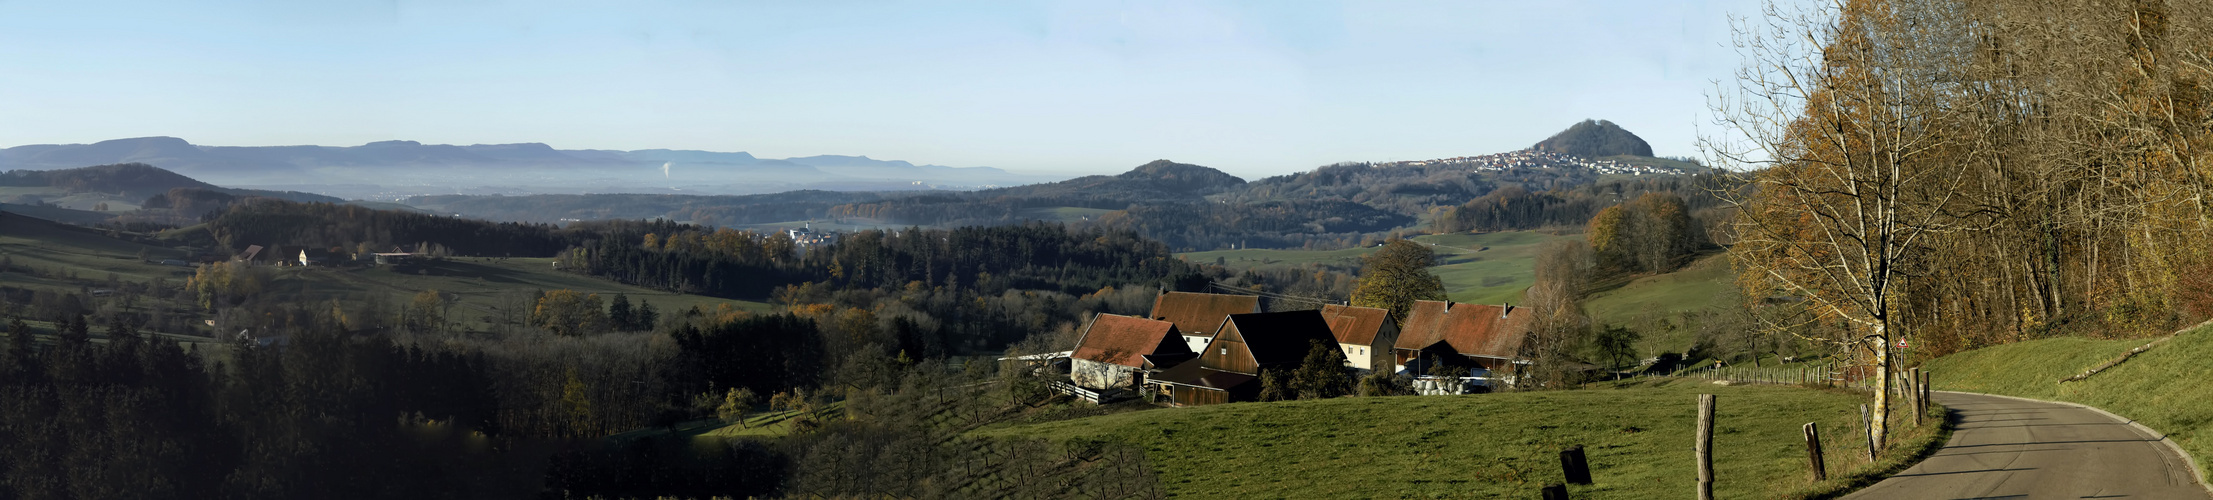 Impressions of Schwabenländle - Staufer - Land